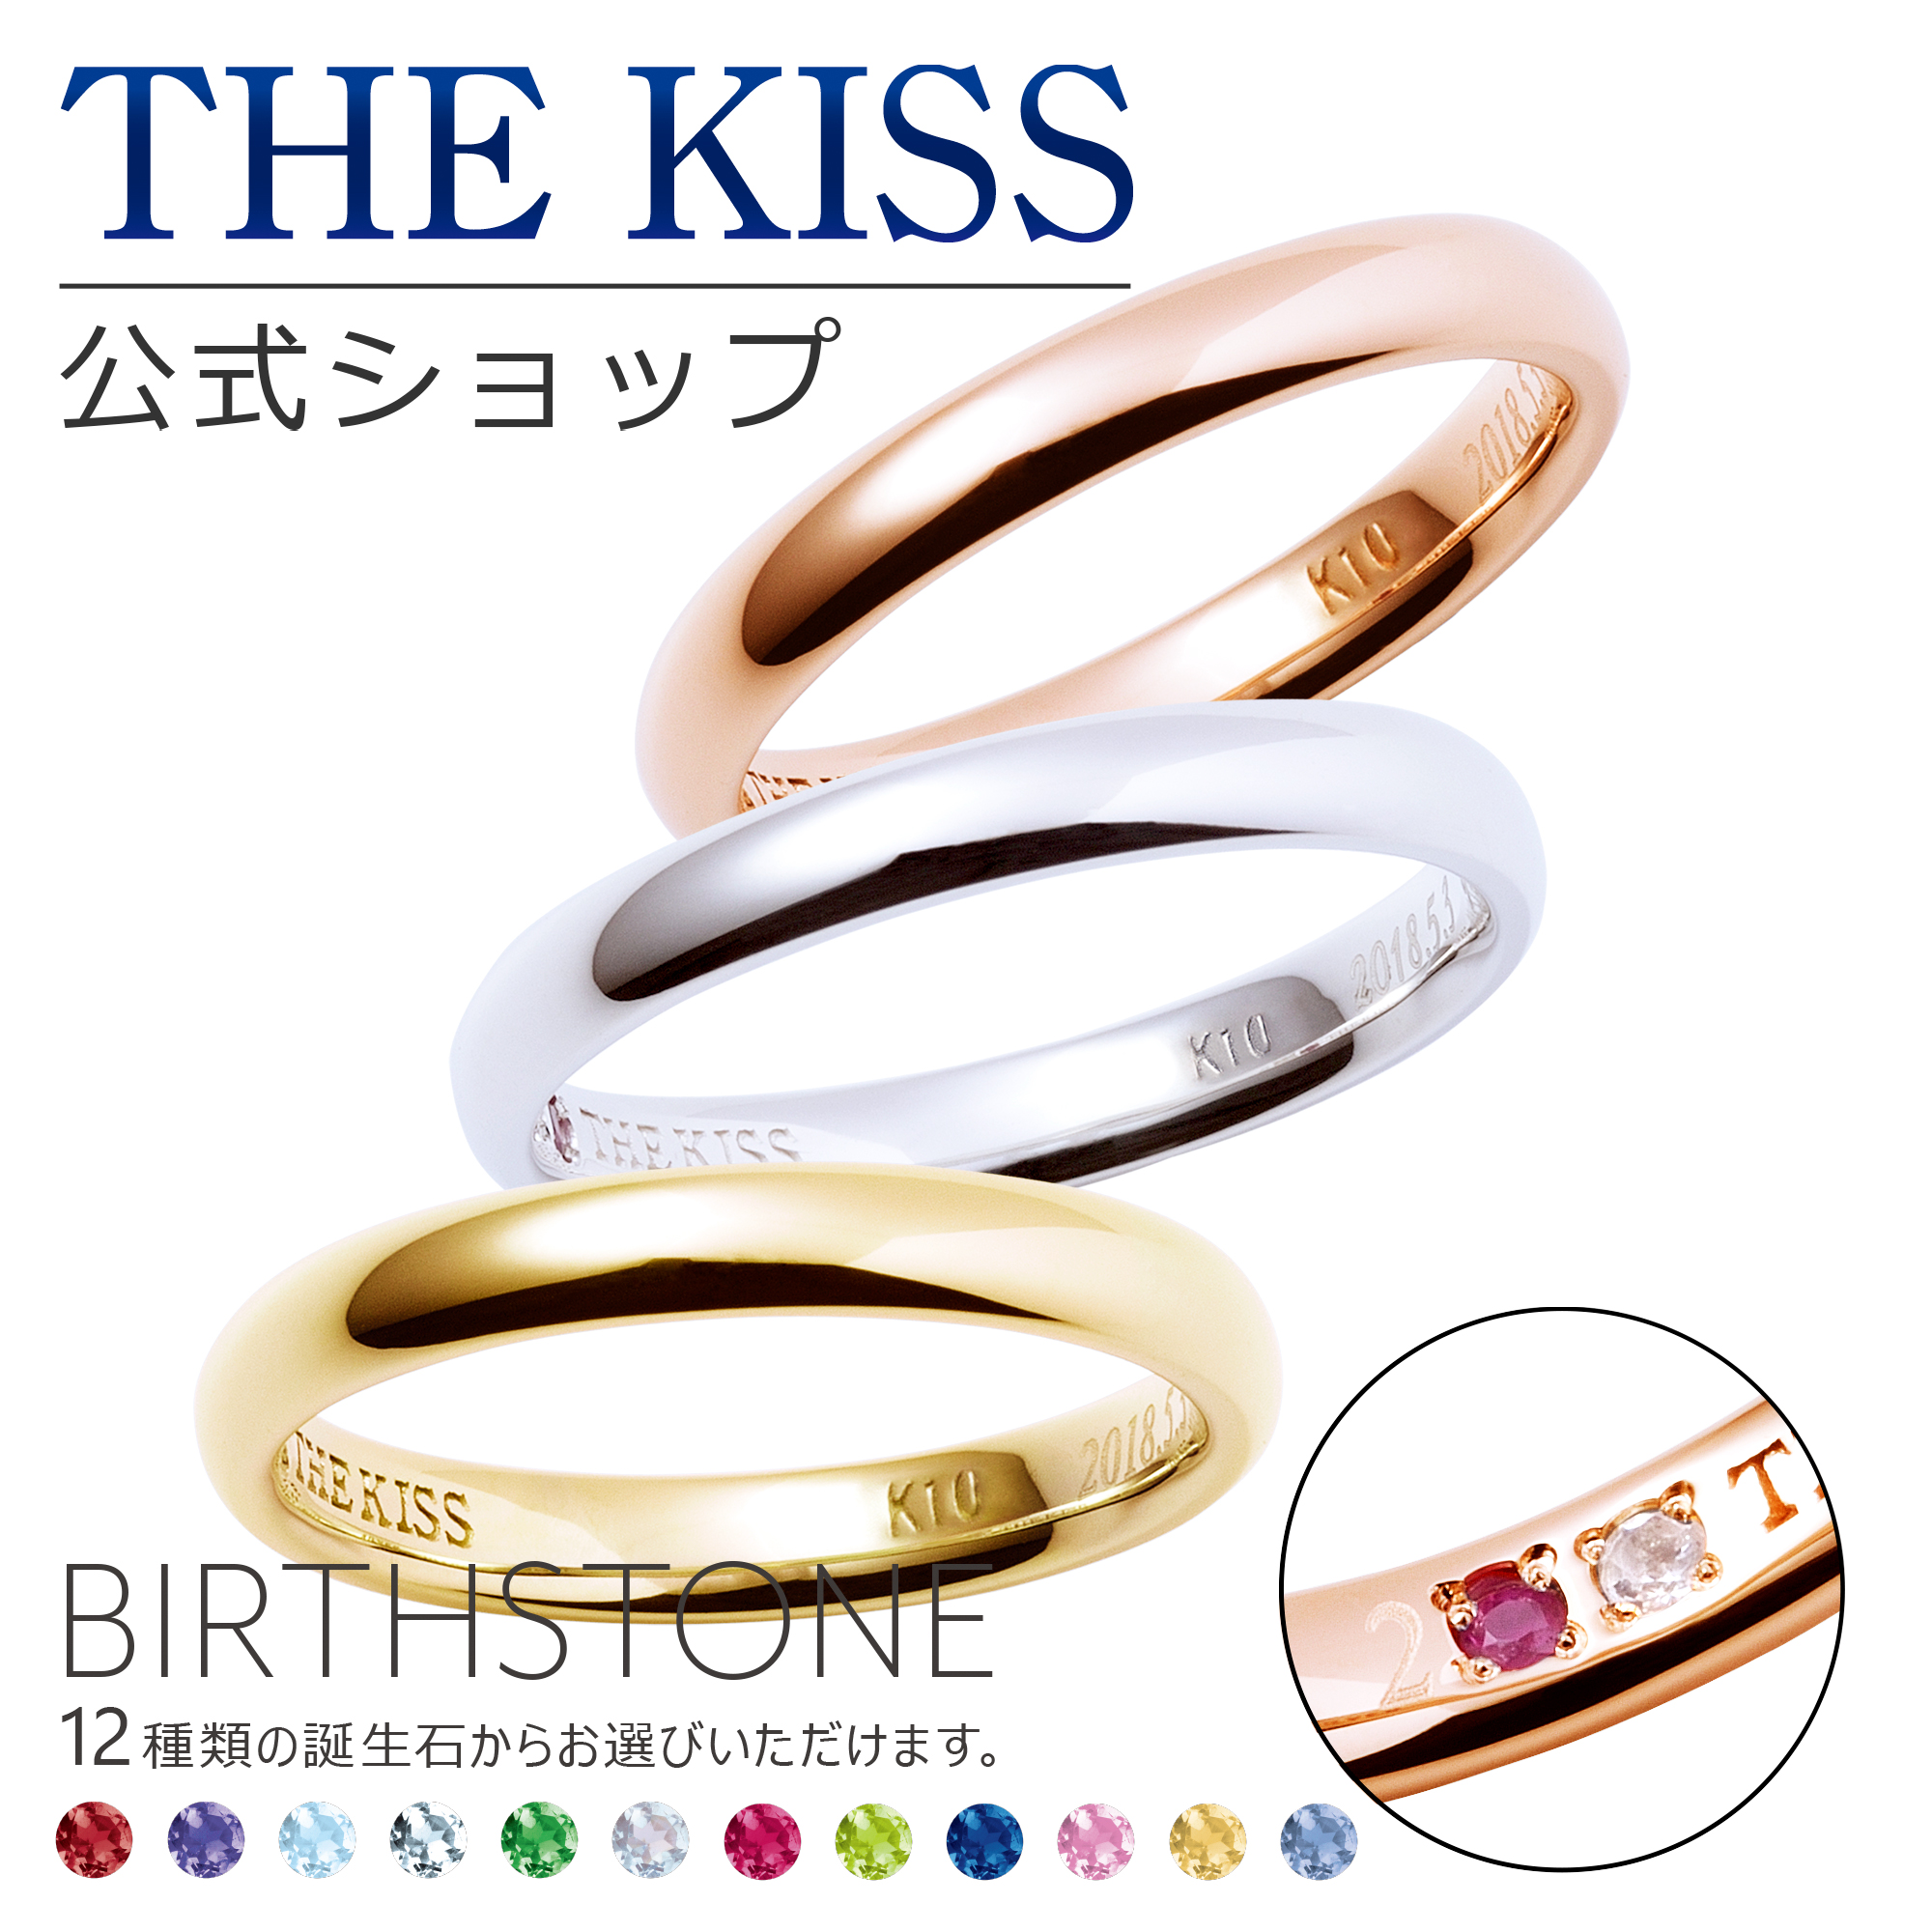 注目ショップ・ブランドのギフト THE KISS 公式ショップ セミオーダー K10 ゴールド ペアリング オーダーメイド 偶数 レディース メンズ  単品 ペアアクセサリー カップル 人気 ブランド THEKISS 指輪 誕生石 バースデーストーン 母の日 